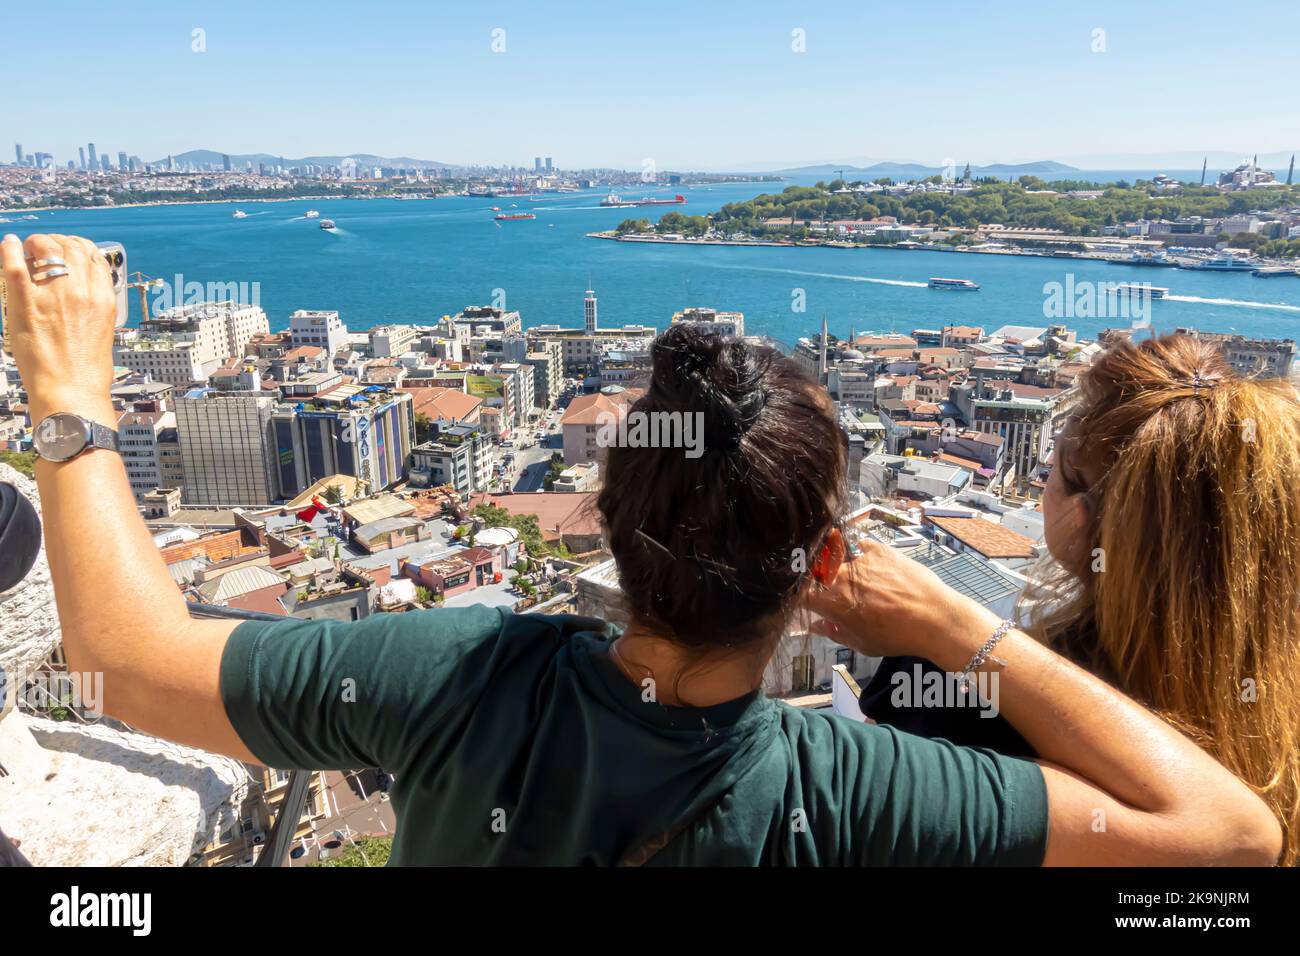 Coppia, uomo e donna che prendono selfie in Galata Tower con vista della città di Istanbul e Bosphor. Turisti che fanno selfie. Foto Stock